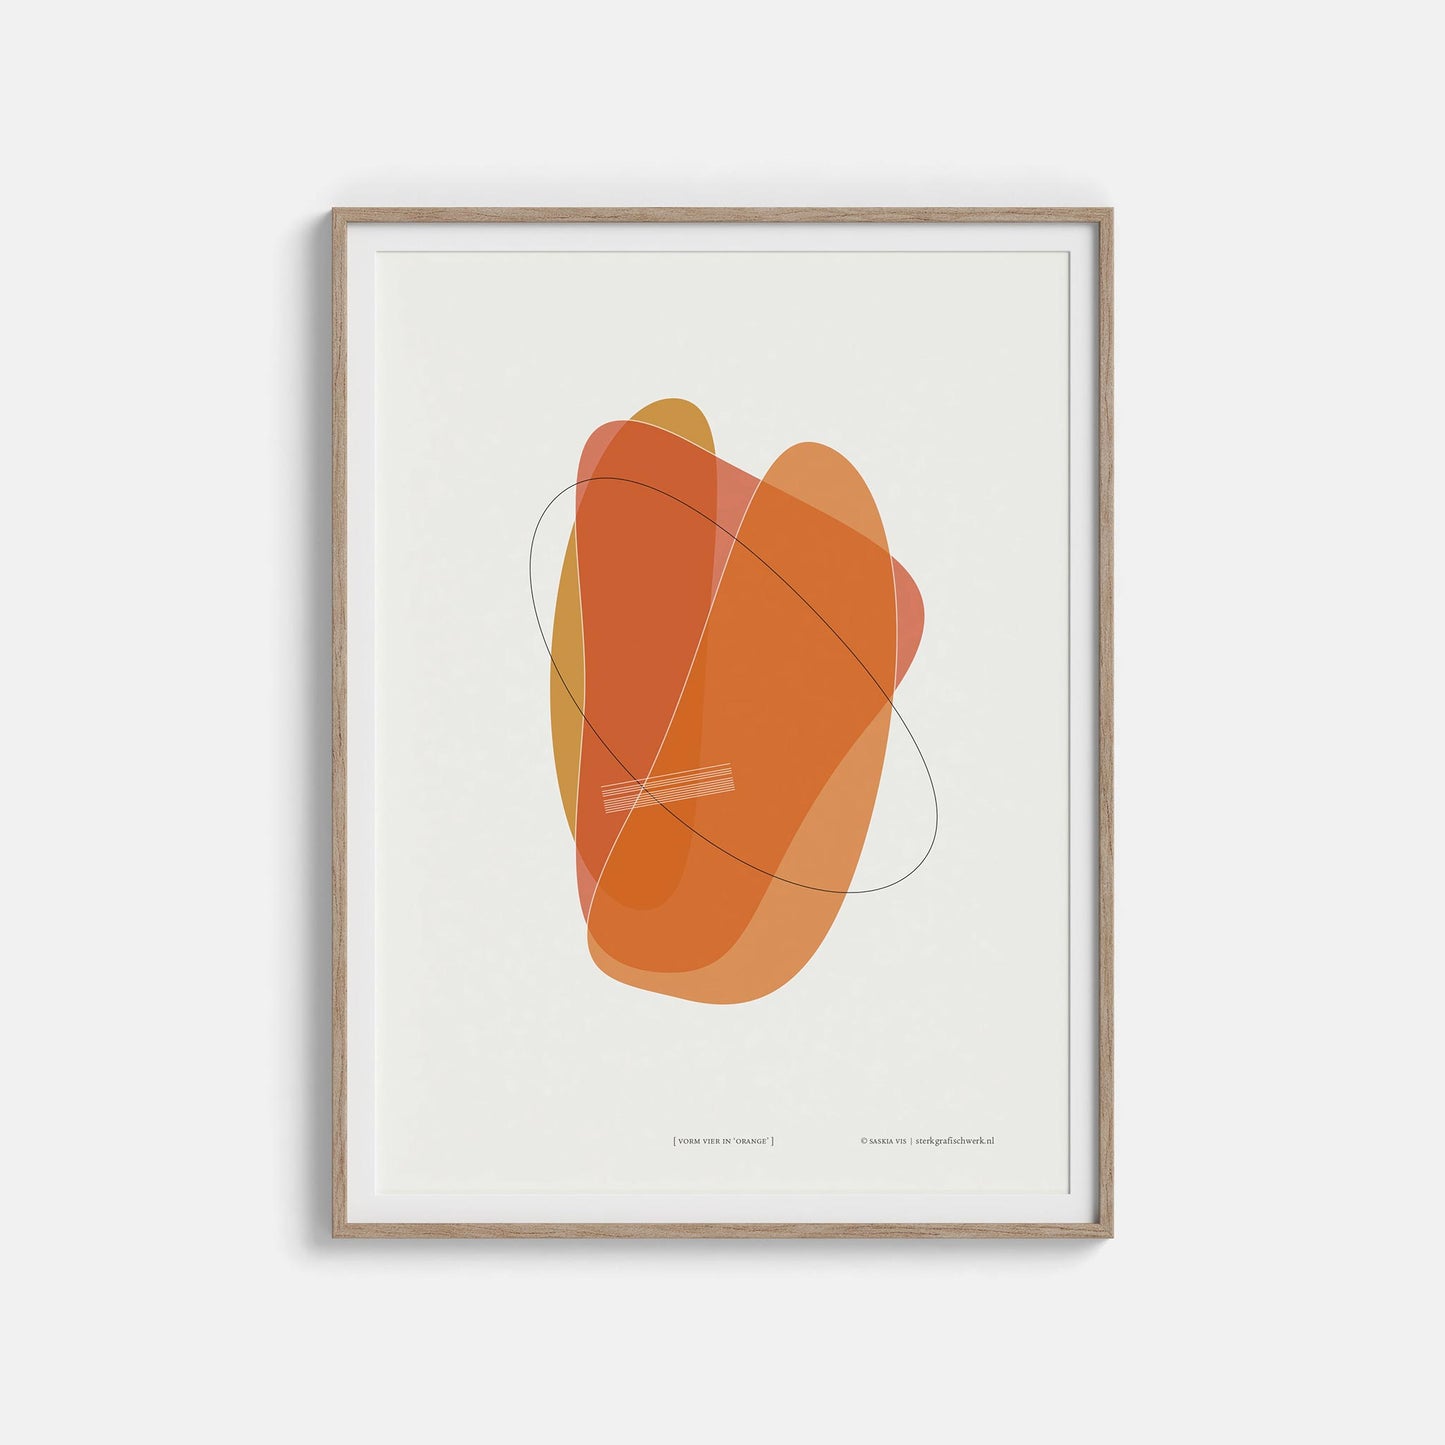 Productafbeelding, poster "vorm vier in orange", foto impressie 4, in een houten lijst hangend aan een witte muur